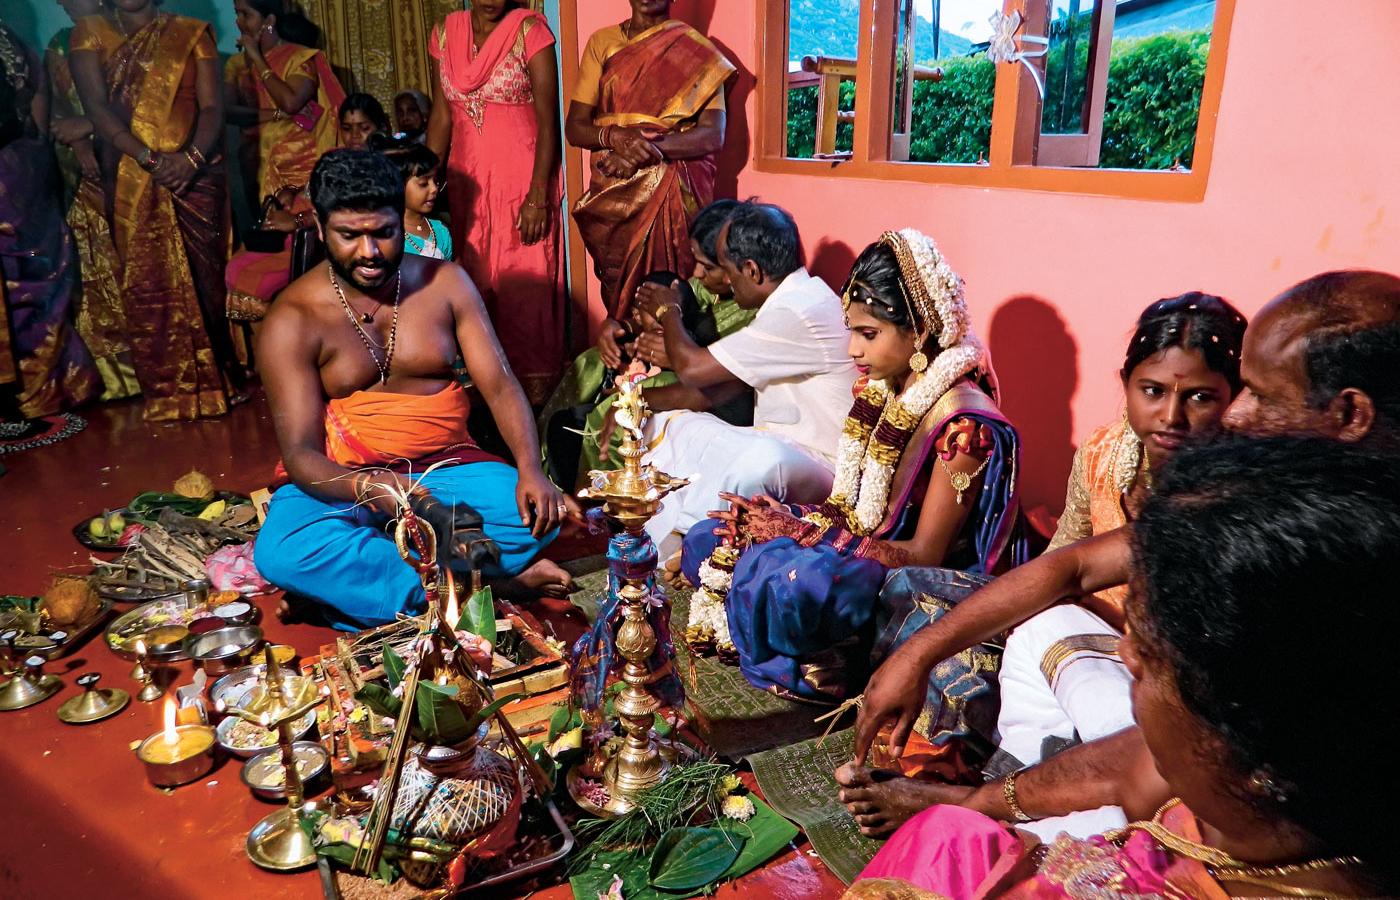 Tradycyjne tamilskie przyjęcie towarzyszące prowadzonej przez kapłana ceremonii przejścia dziewczyny do społeczności dorosłych.